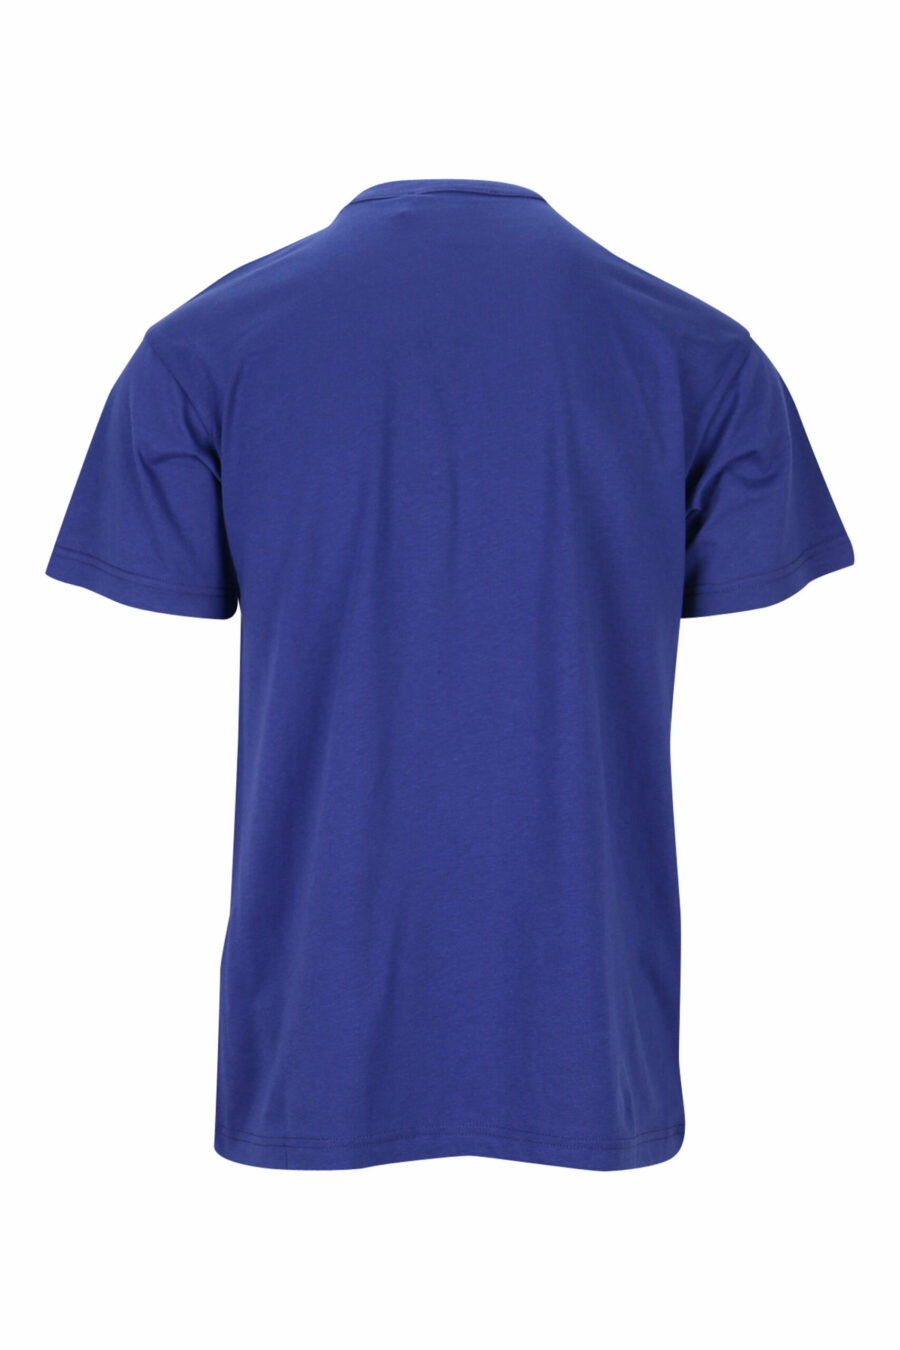 Camiseta azul marino con maxilogo clásico azul - 8052019468175 1 scaled